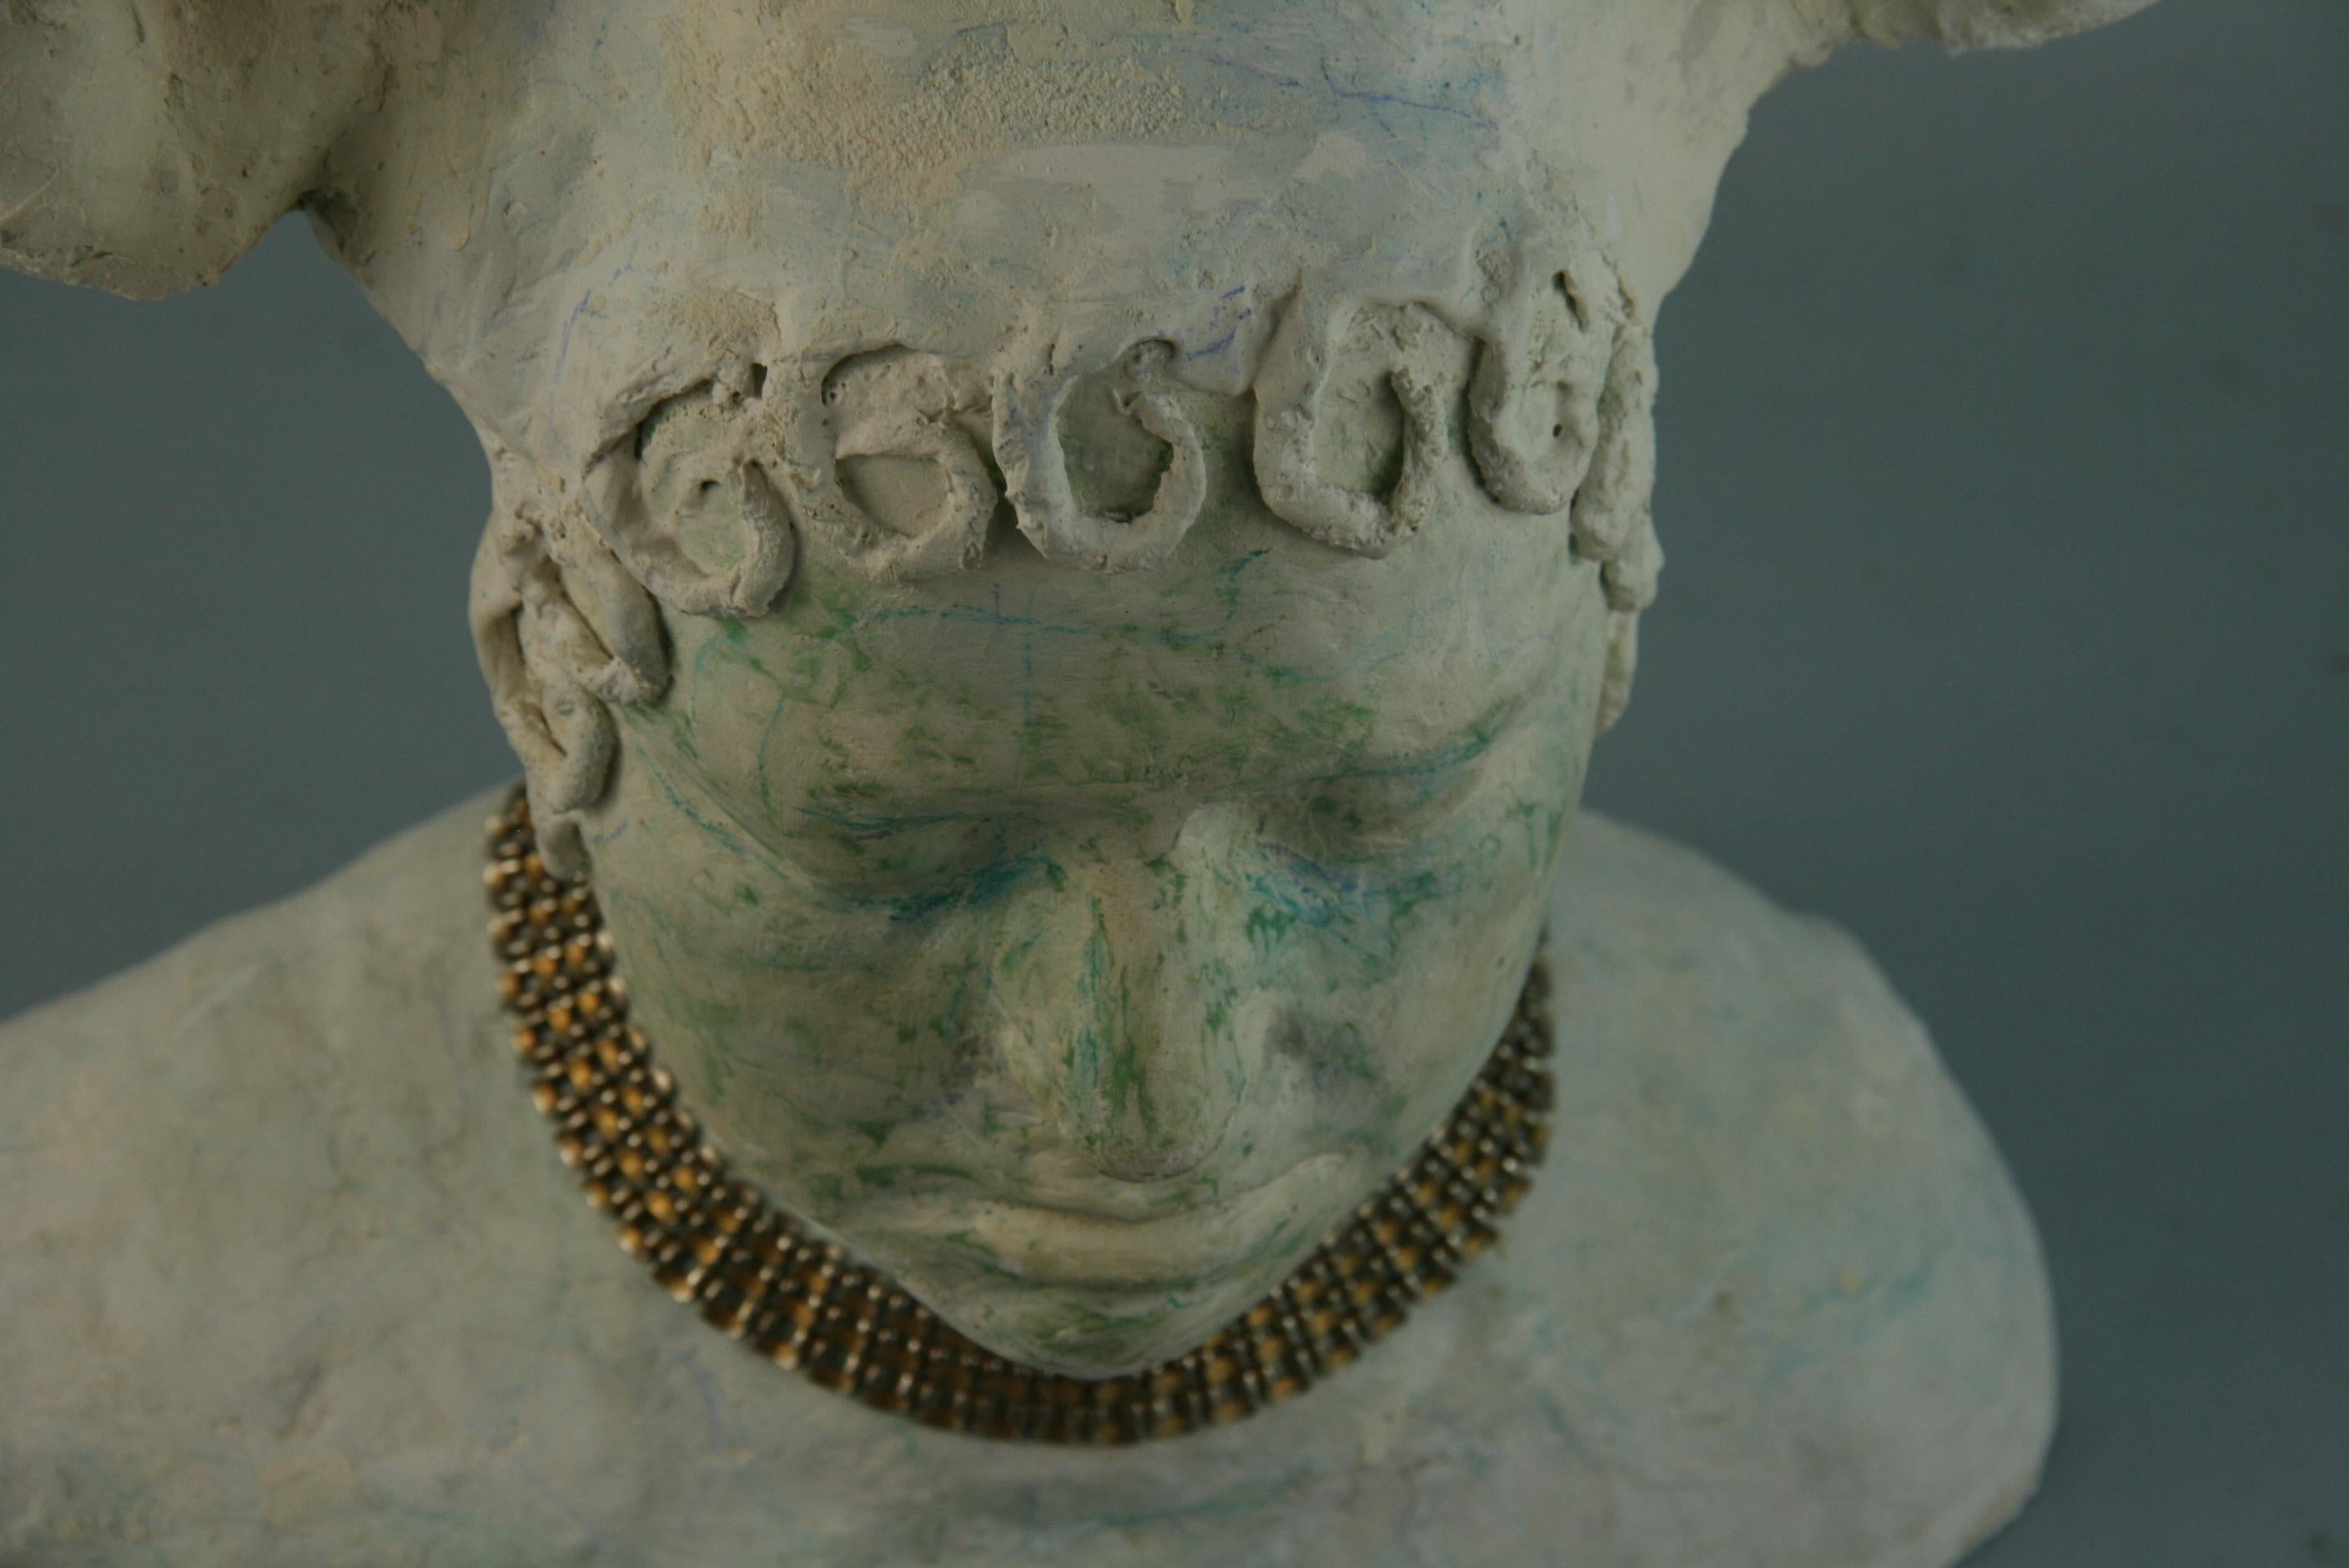 734 Handgefertigte Medusa aus Gips mit Halskette.
Entworfen und hergestellt von Brunelli